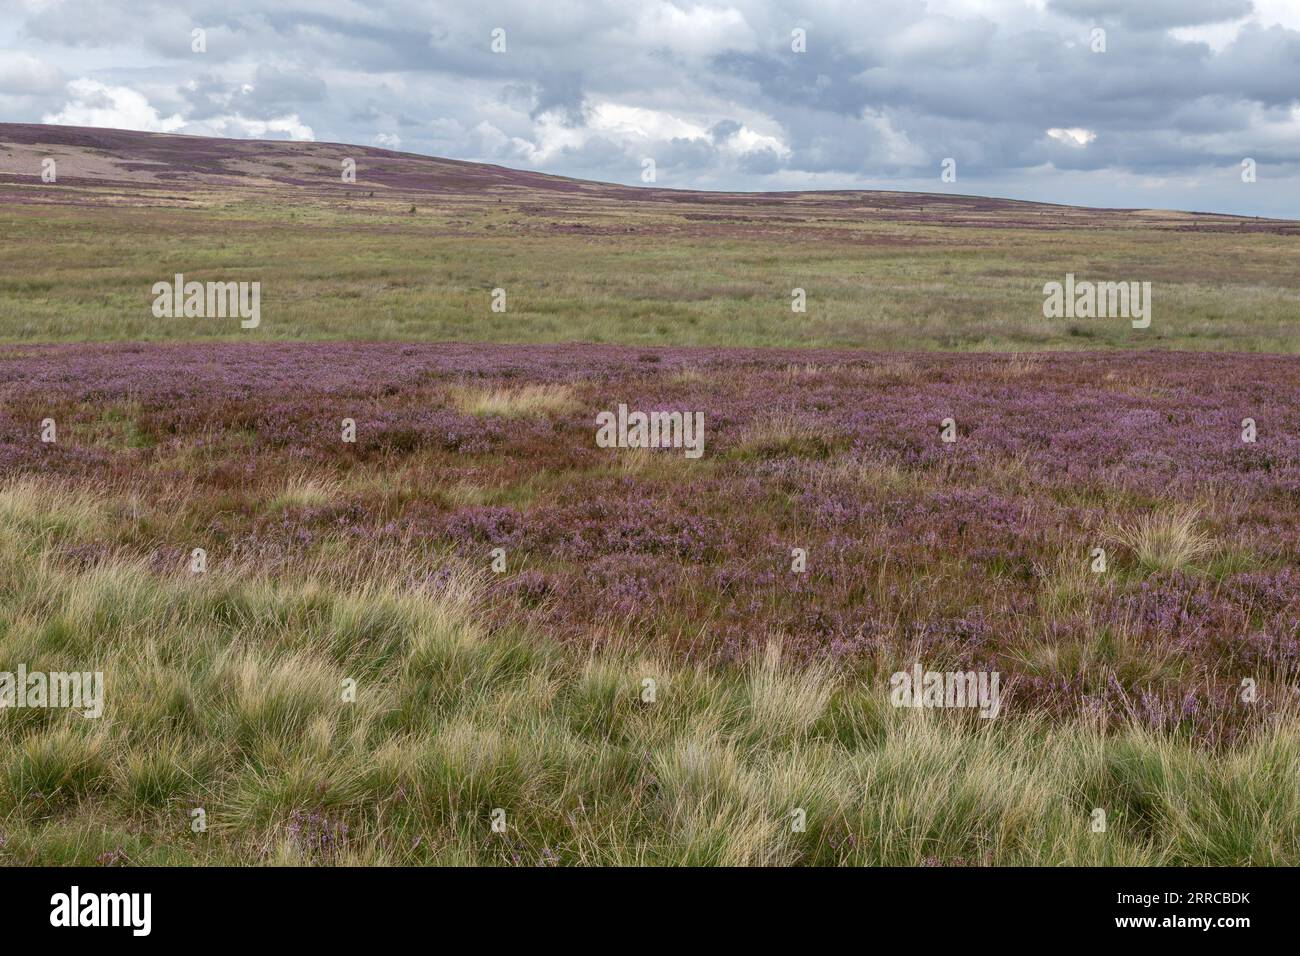 Heather (ling, Calluna vulgaris) moorland. Rombalds Moor (Ilkley Moor) in Yorkshire. Stock Photo